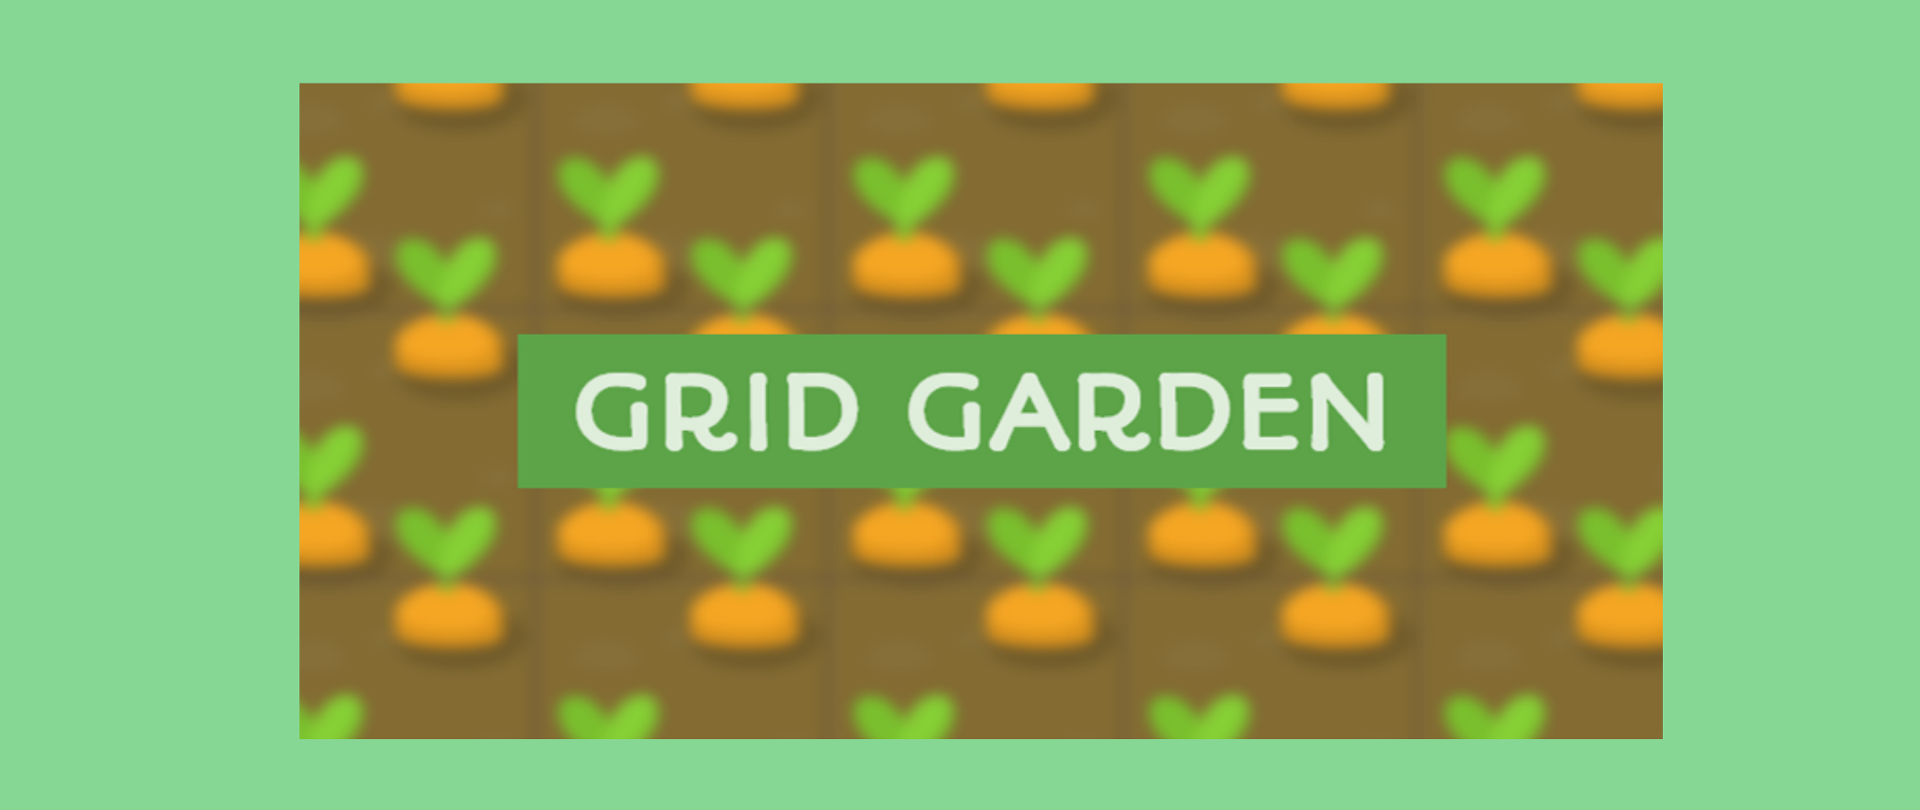 Grafika ma kolor zielony. Na środku widoczne jest rozmazany obrazek z polem marchewki i na zielonbym tle umieszczony jest napis "GRID GARDEN".